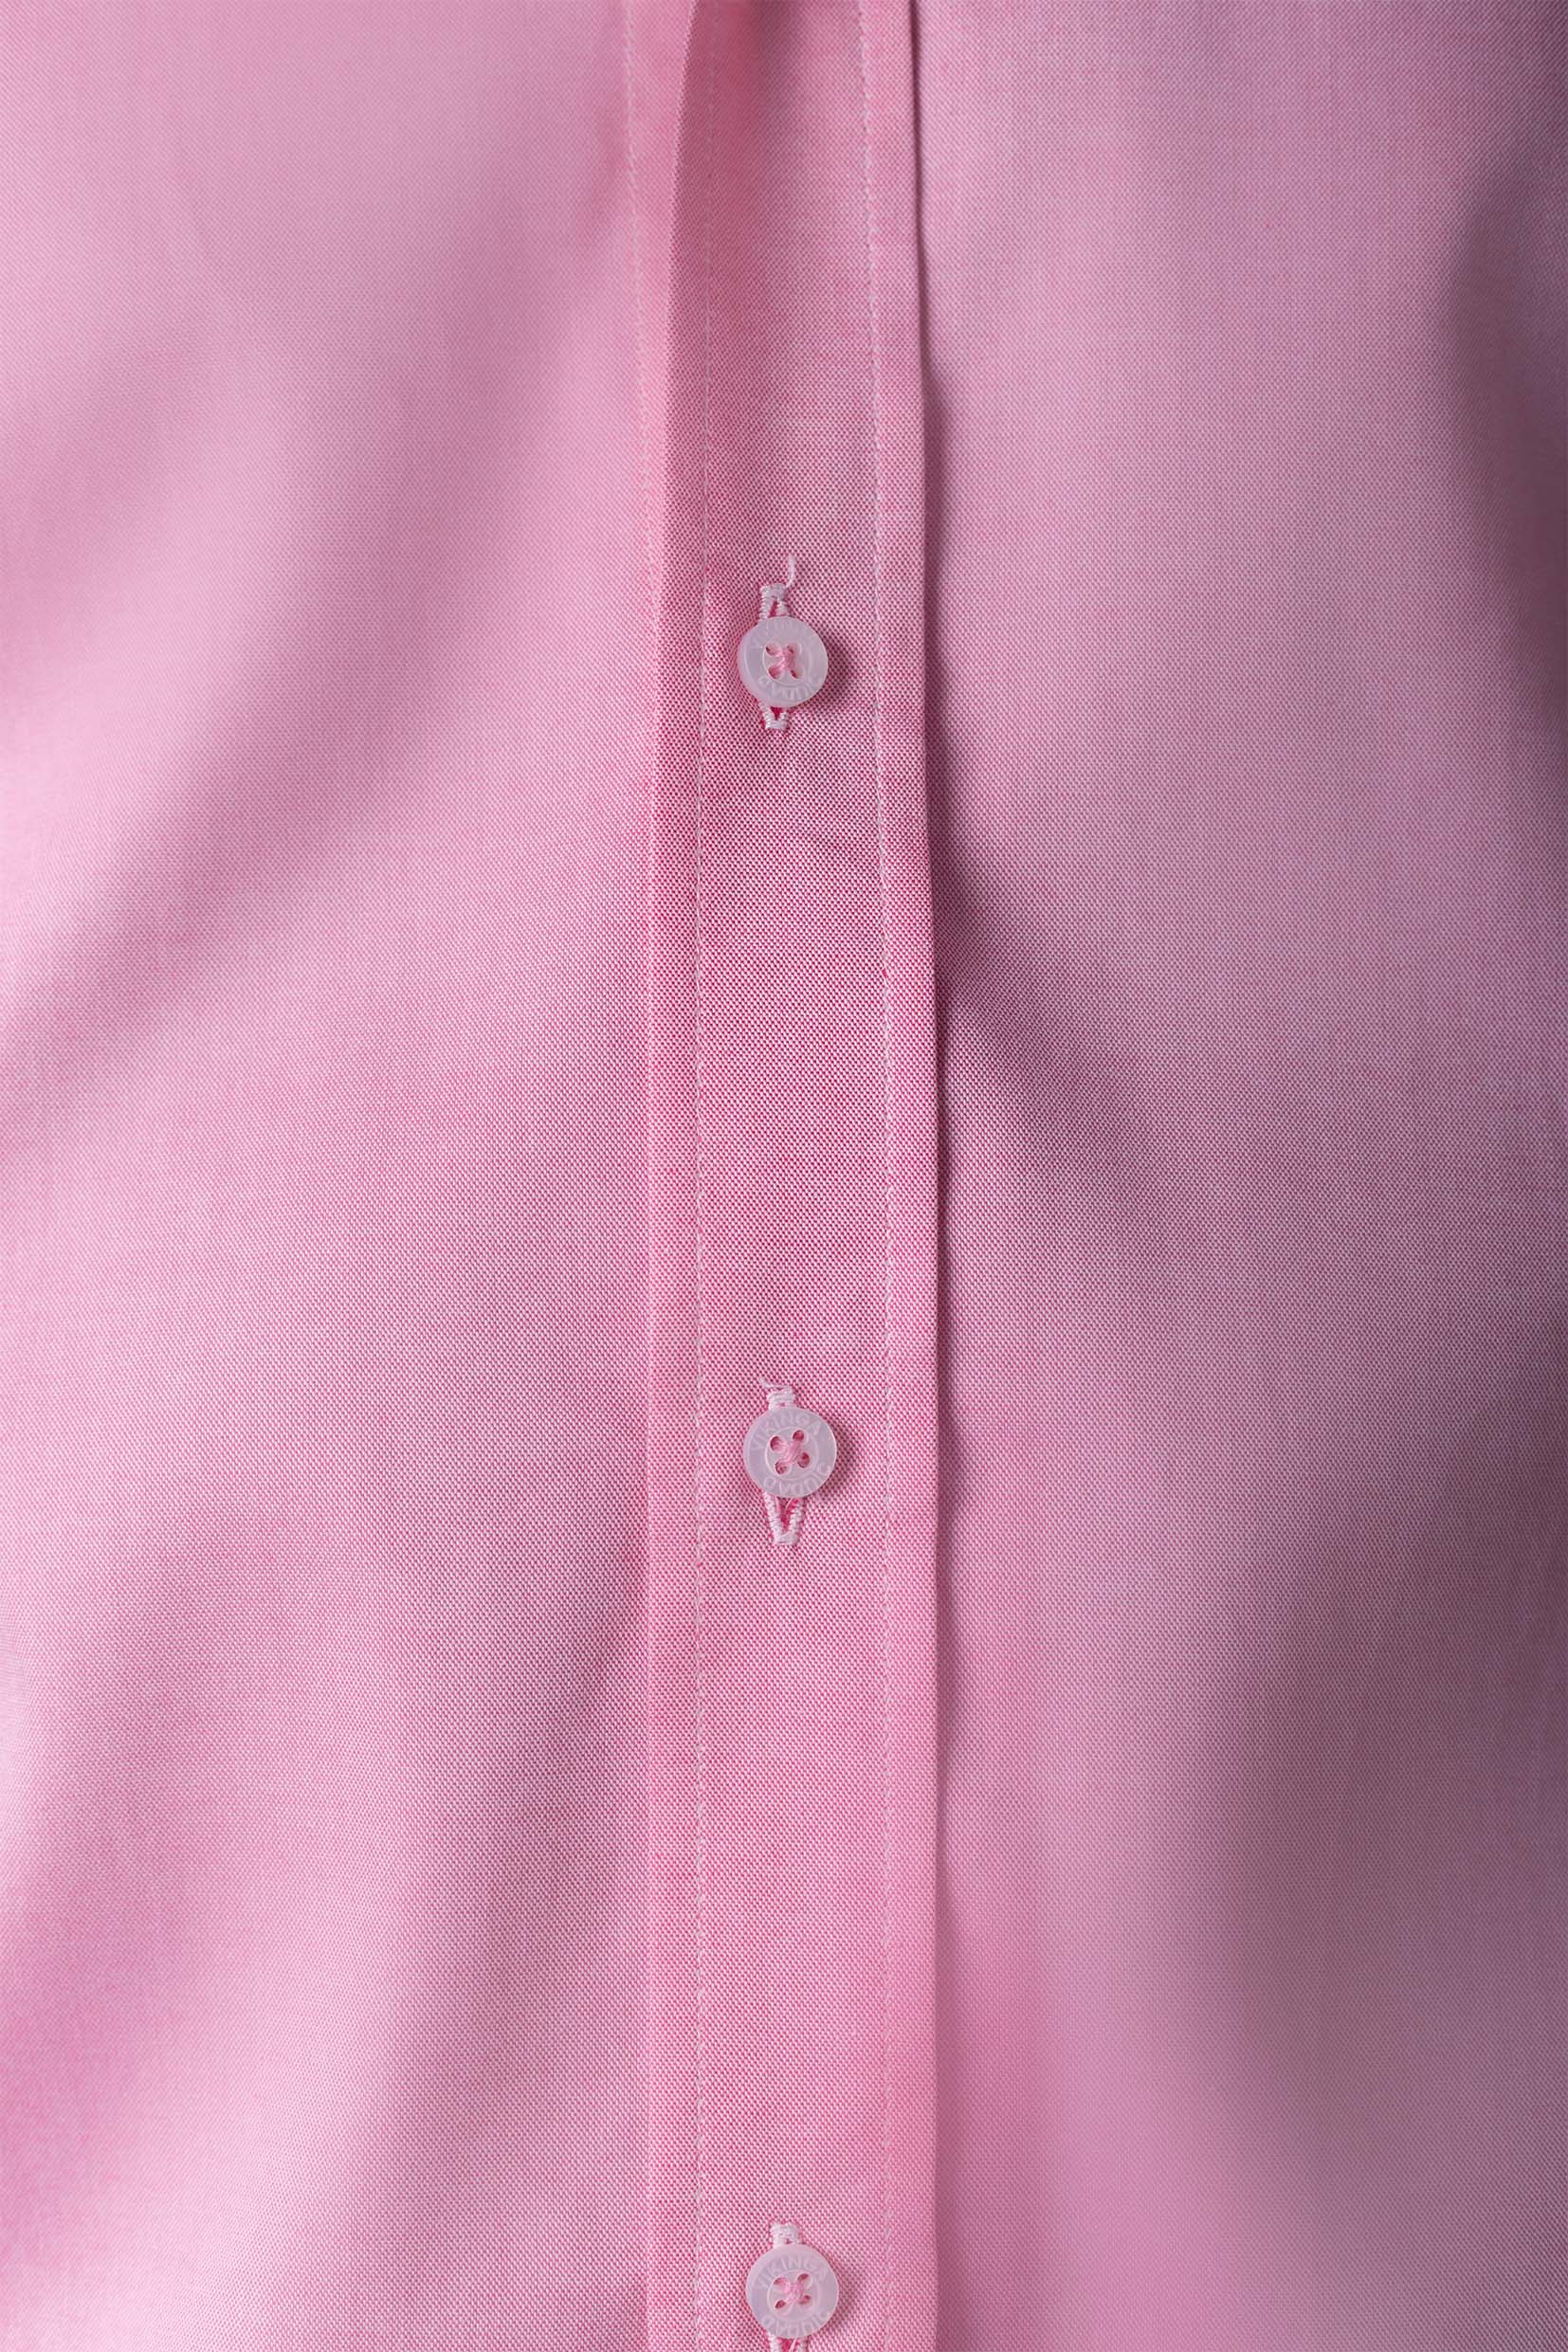 modelo con camisa rosa Colección la isla